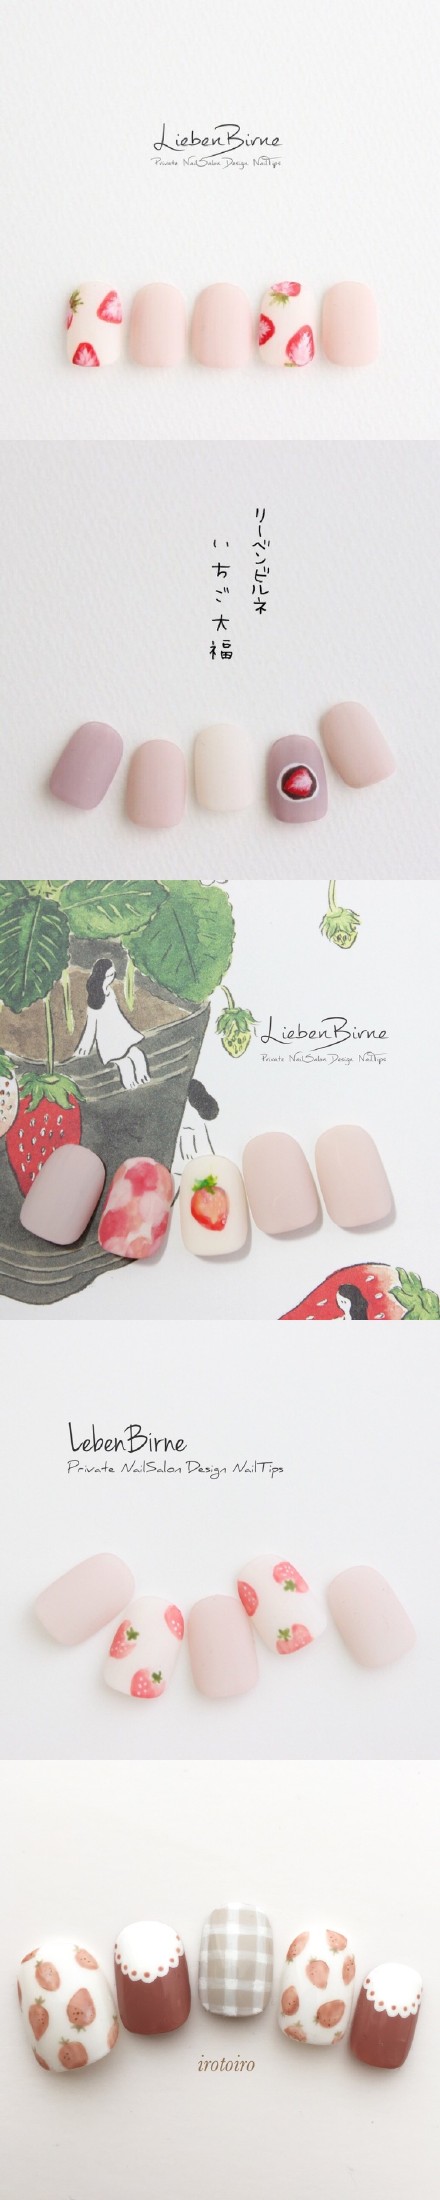 甜甜草莓美甲 承包你的整个夏天